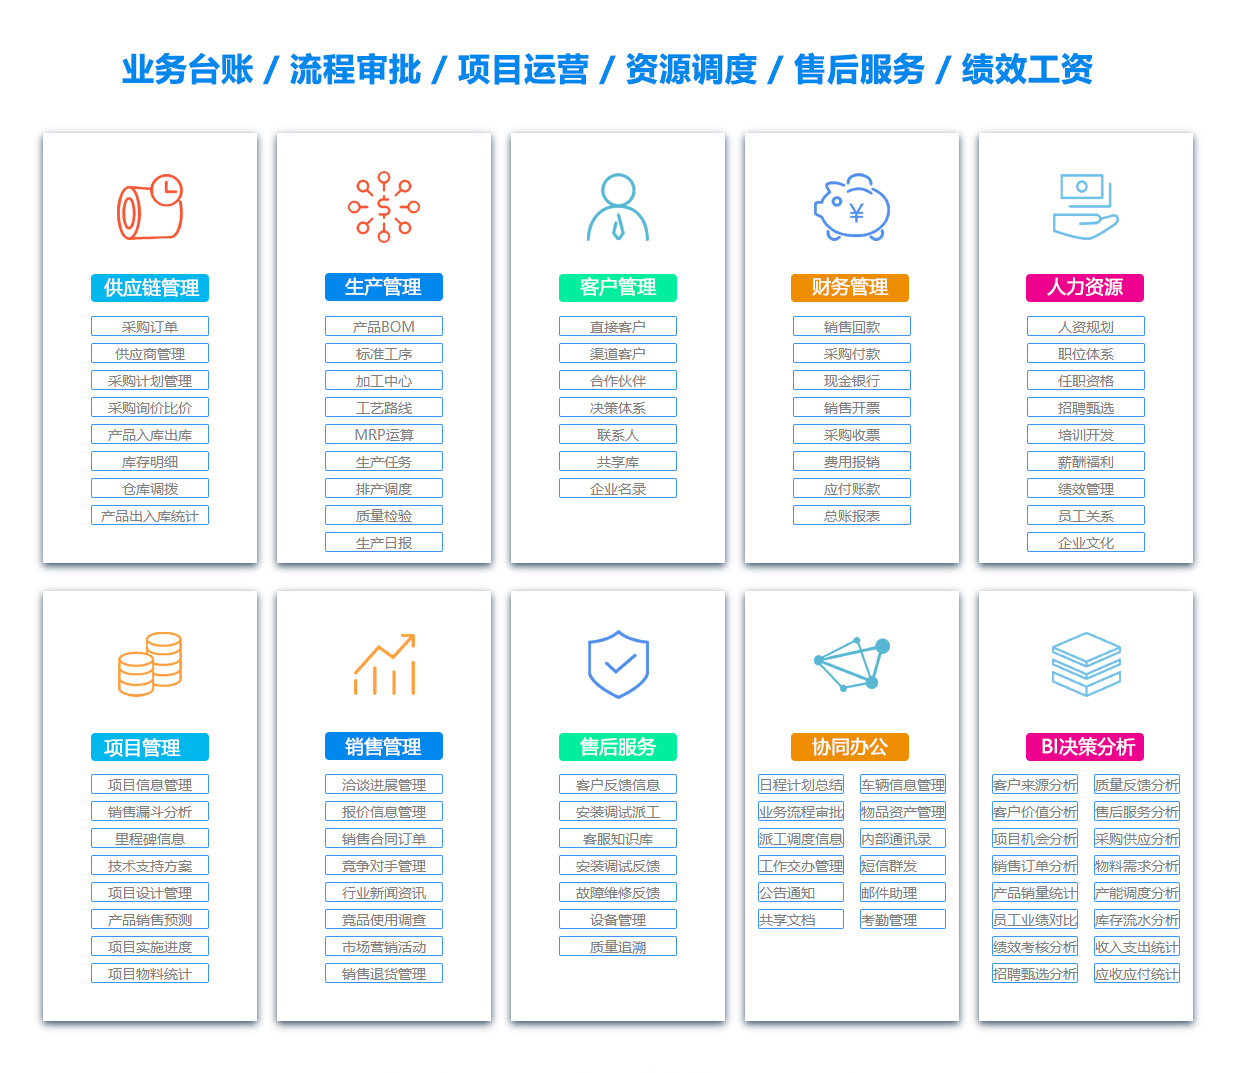 黑龙江客户资料管理系统